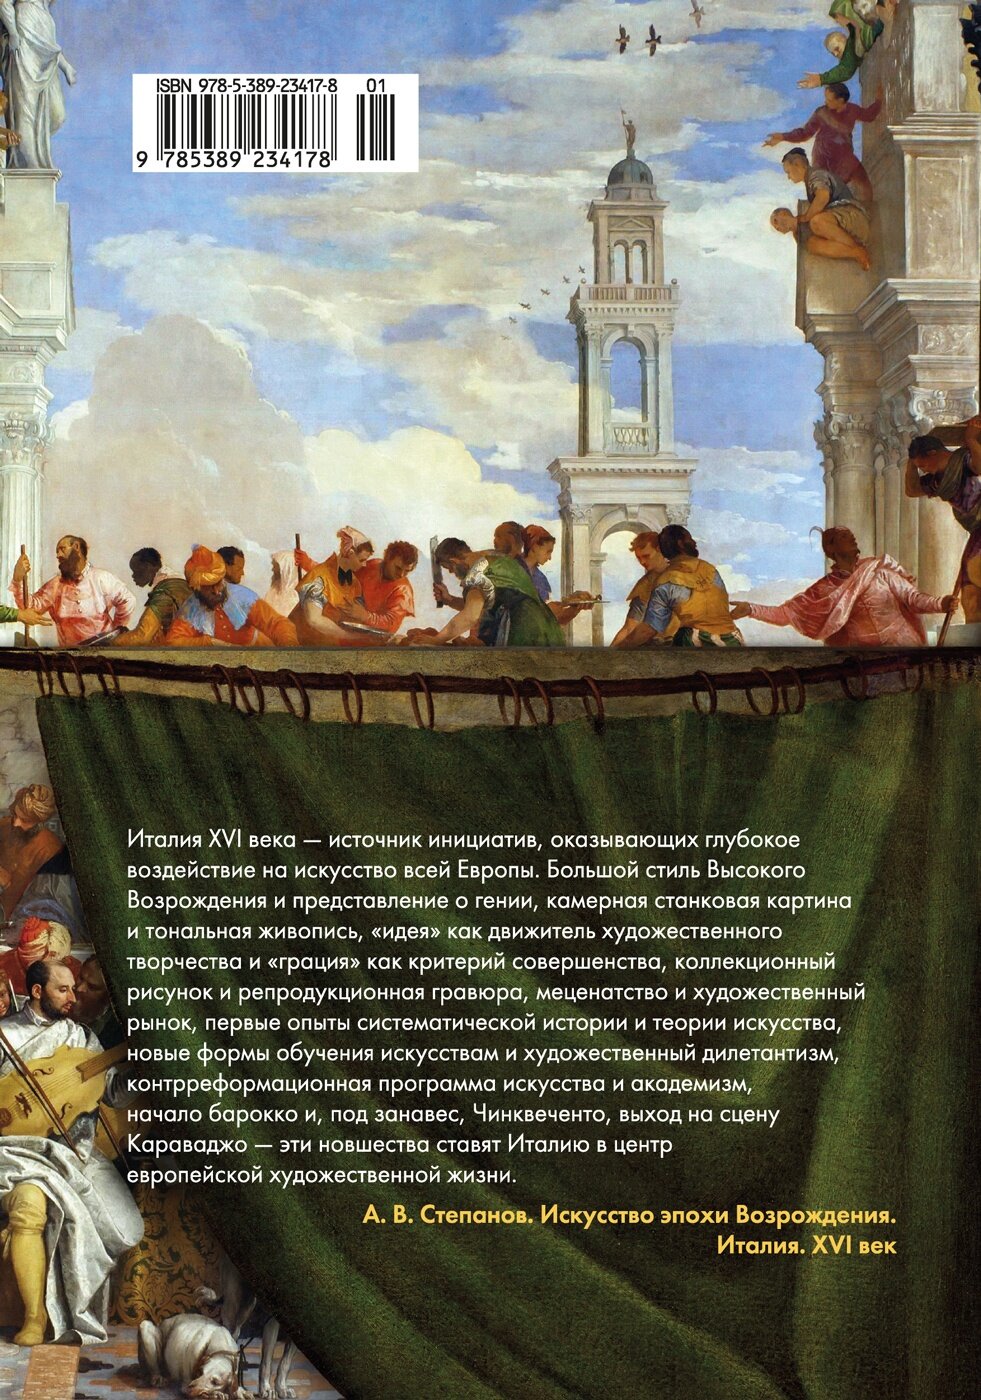 Искусство эпохи Возрождения. Италия. XVI век - фото №3